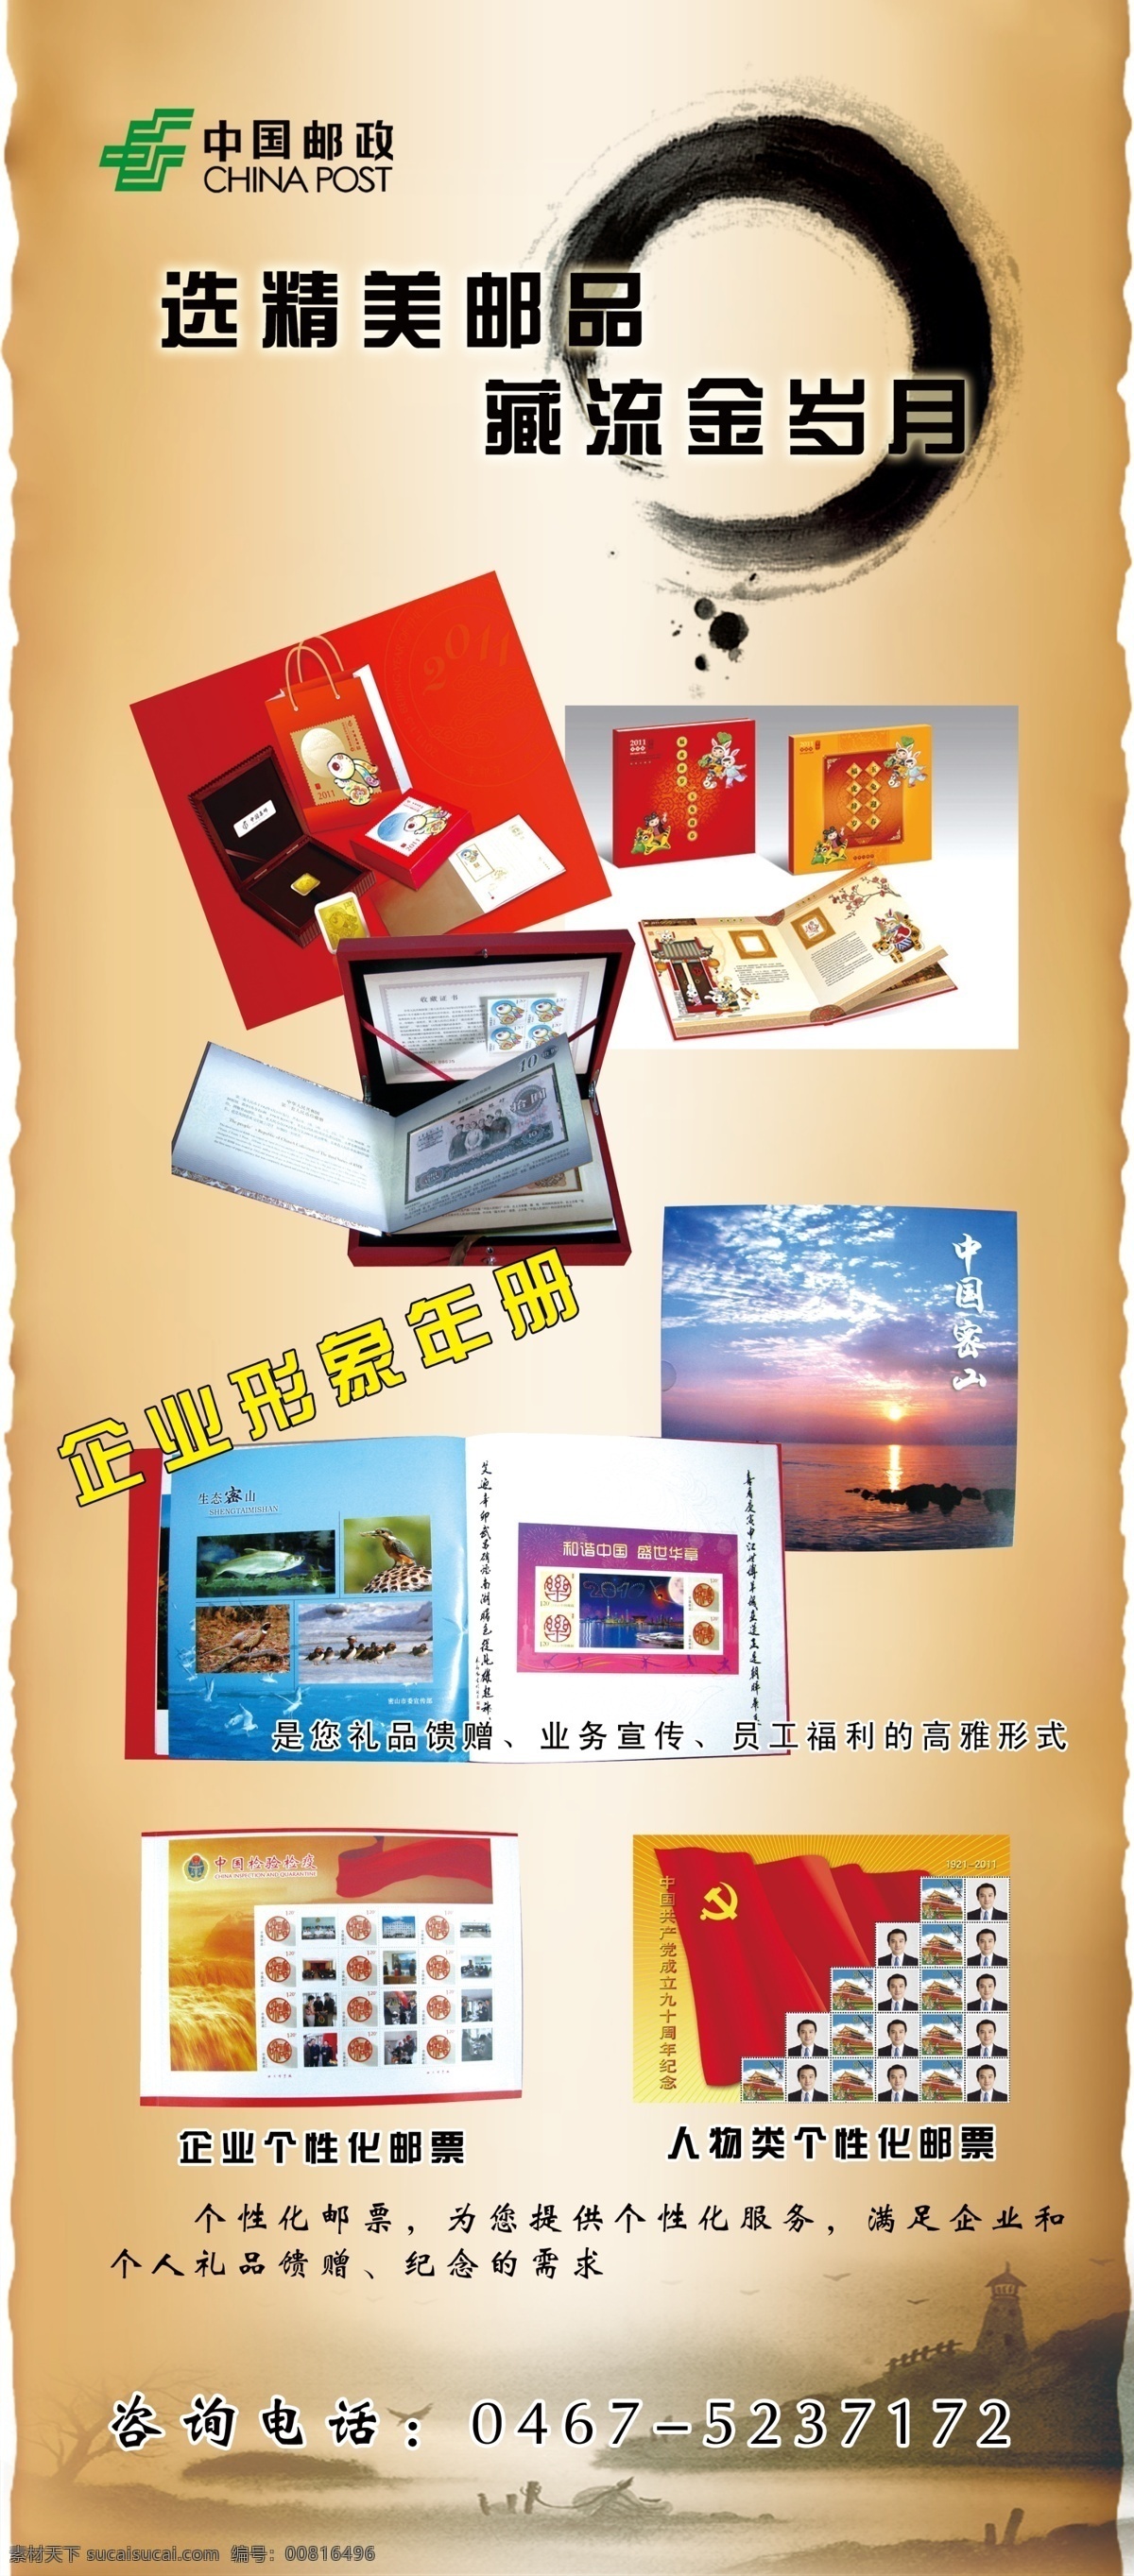 邮政展架 中国邮政 展架 集邮 集邮册 邮票 展板模板 广告设计模板 源文件